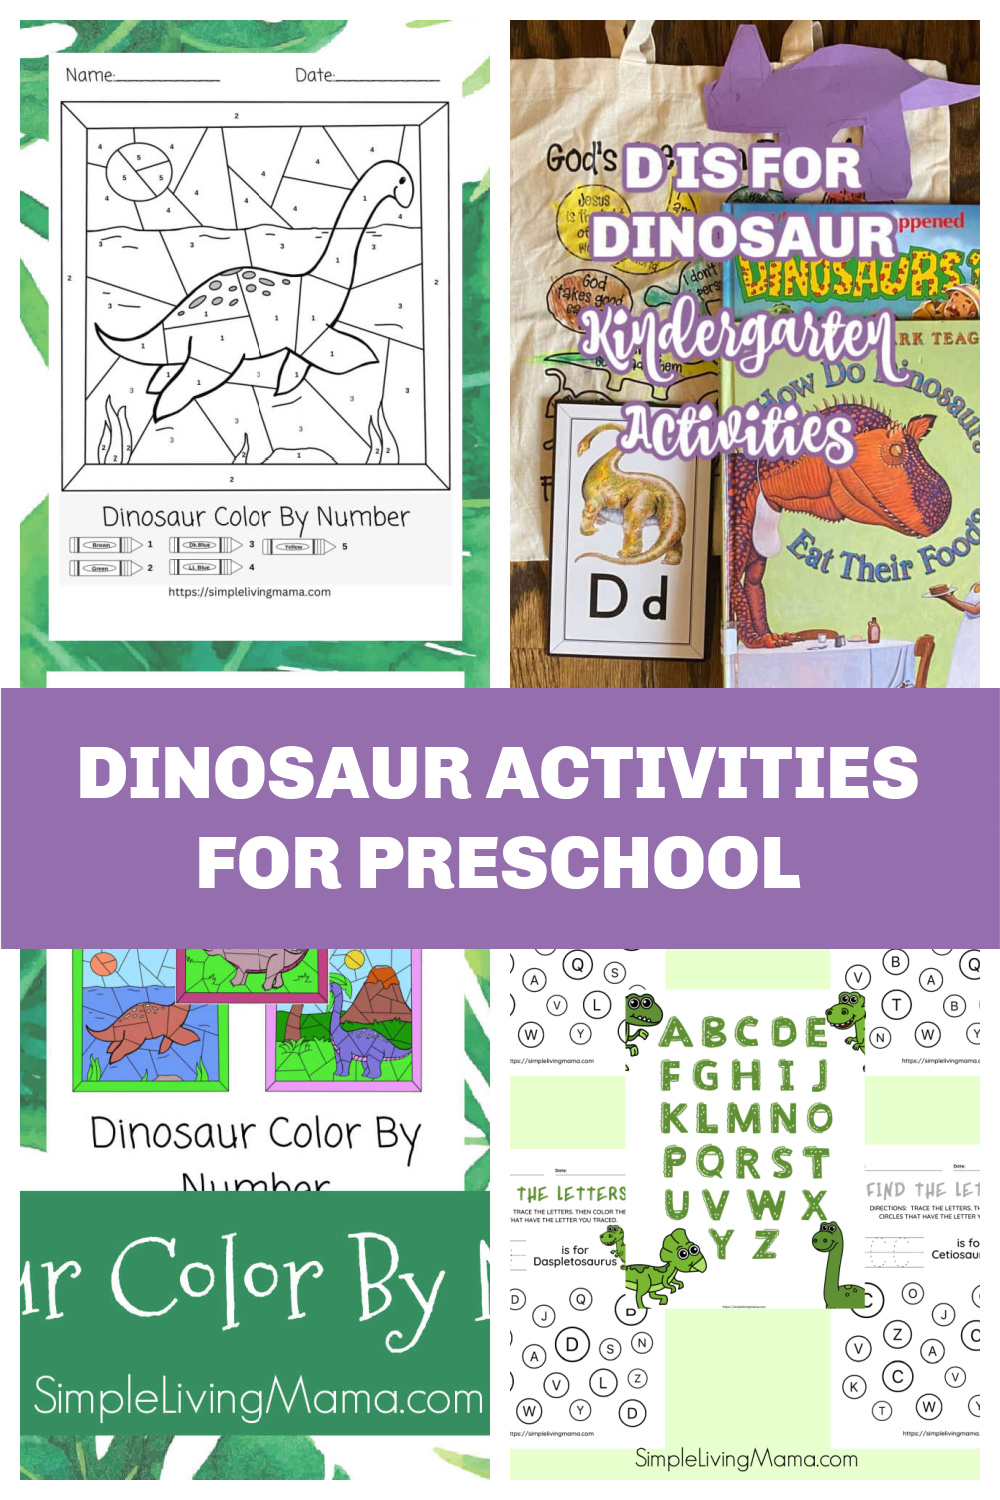 Fun and interactive dinosaur activities for preschoolers